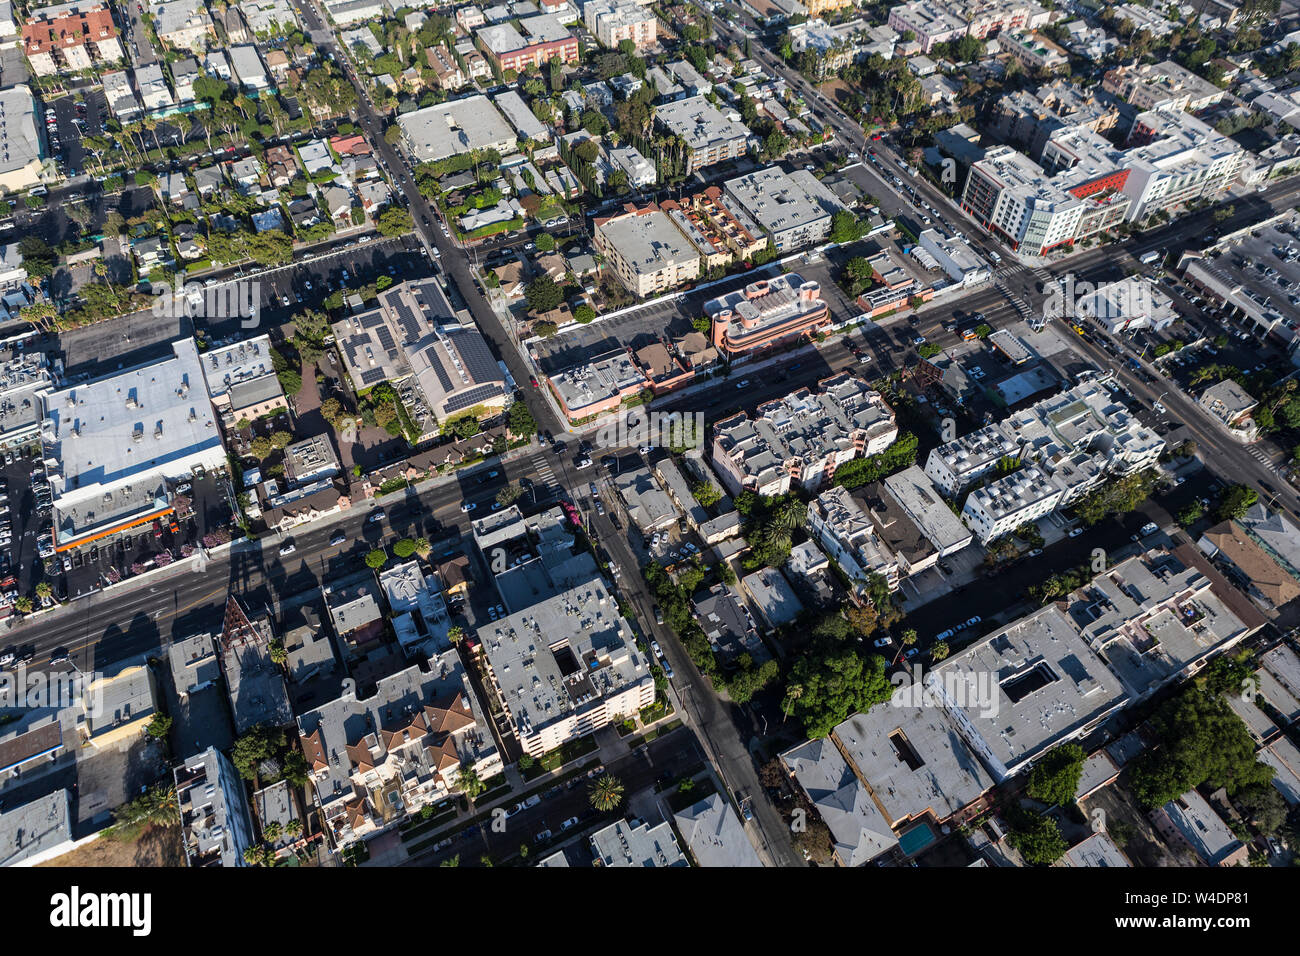 Appartements de grande hauteur et les immeubles commerciaux le long de La Brea Ave dans le quartier d'Hollywood de Los Angeles, Californie. Banque D'Images